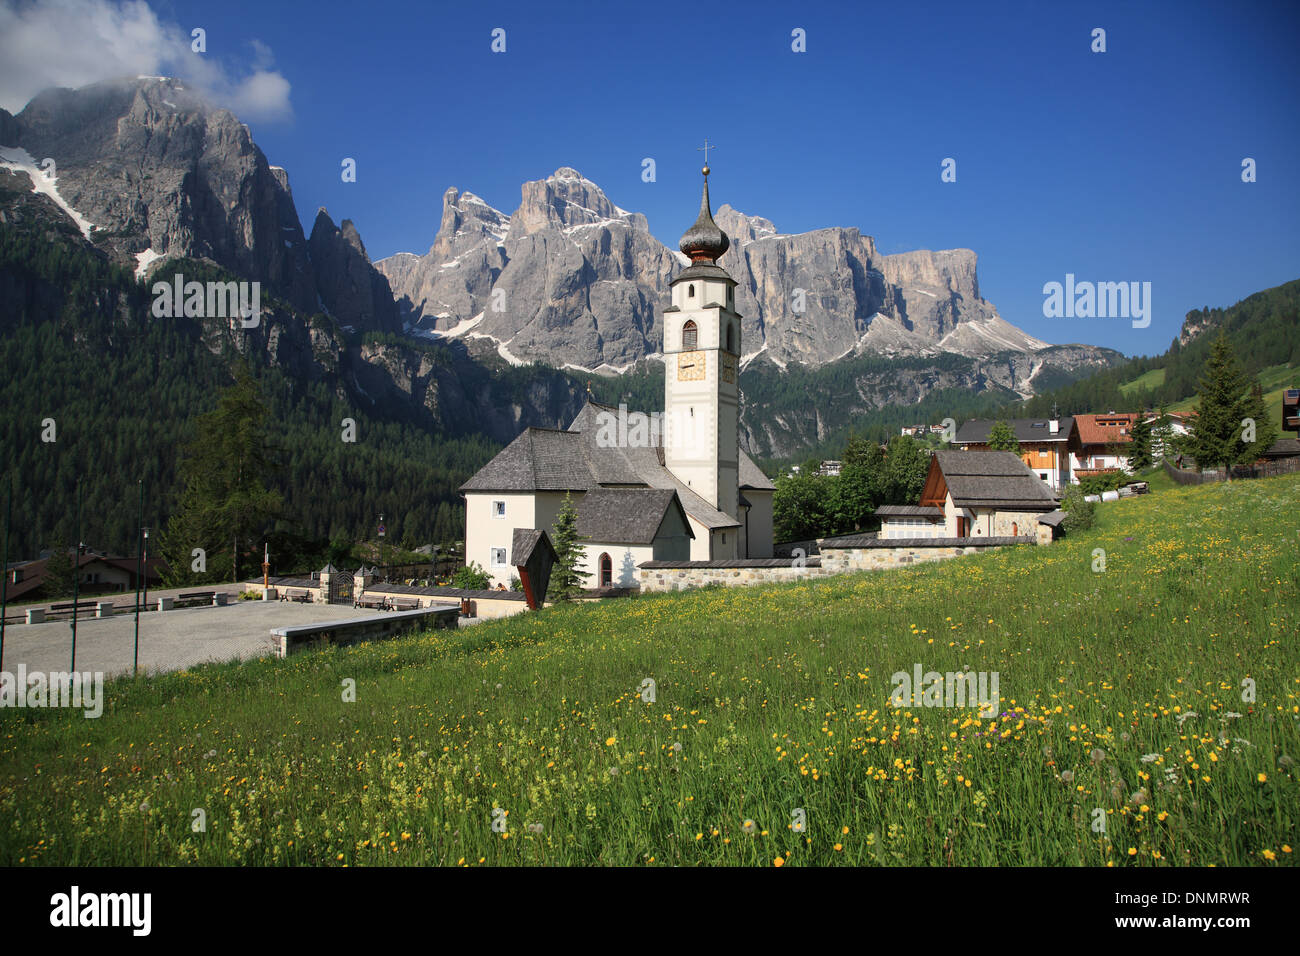 Le Dolomiti, Sella gruppo montuoso, in Italia, in provincia di Bolzano, Colfosco, patrimonio mondiale dell UNESCO Foto Stock